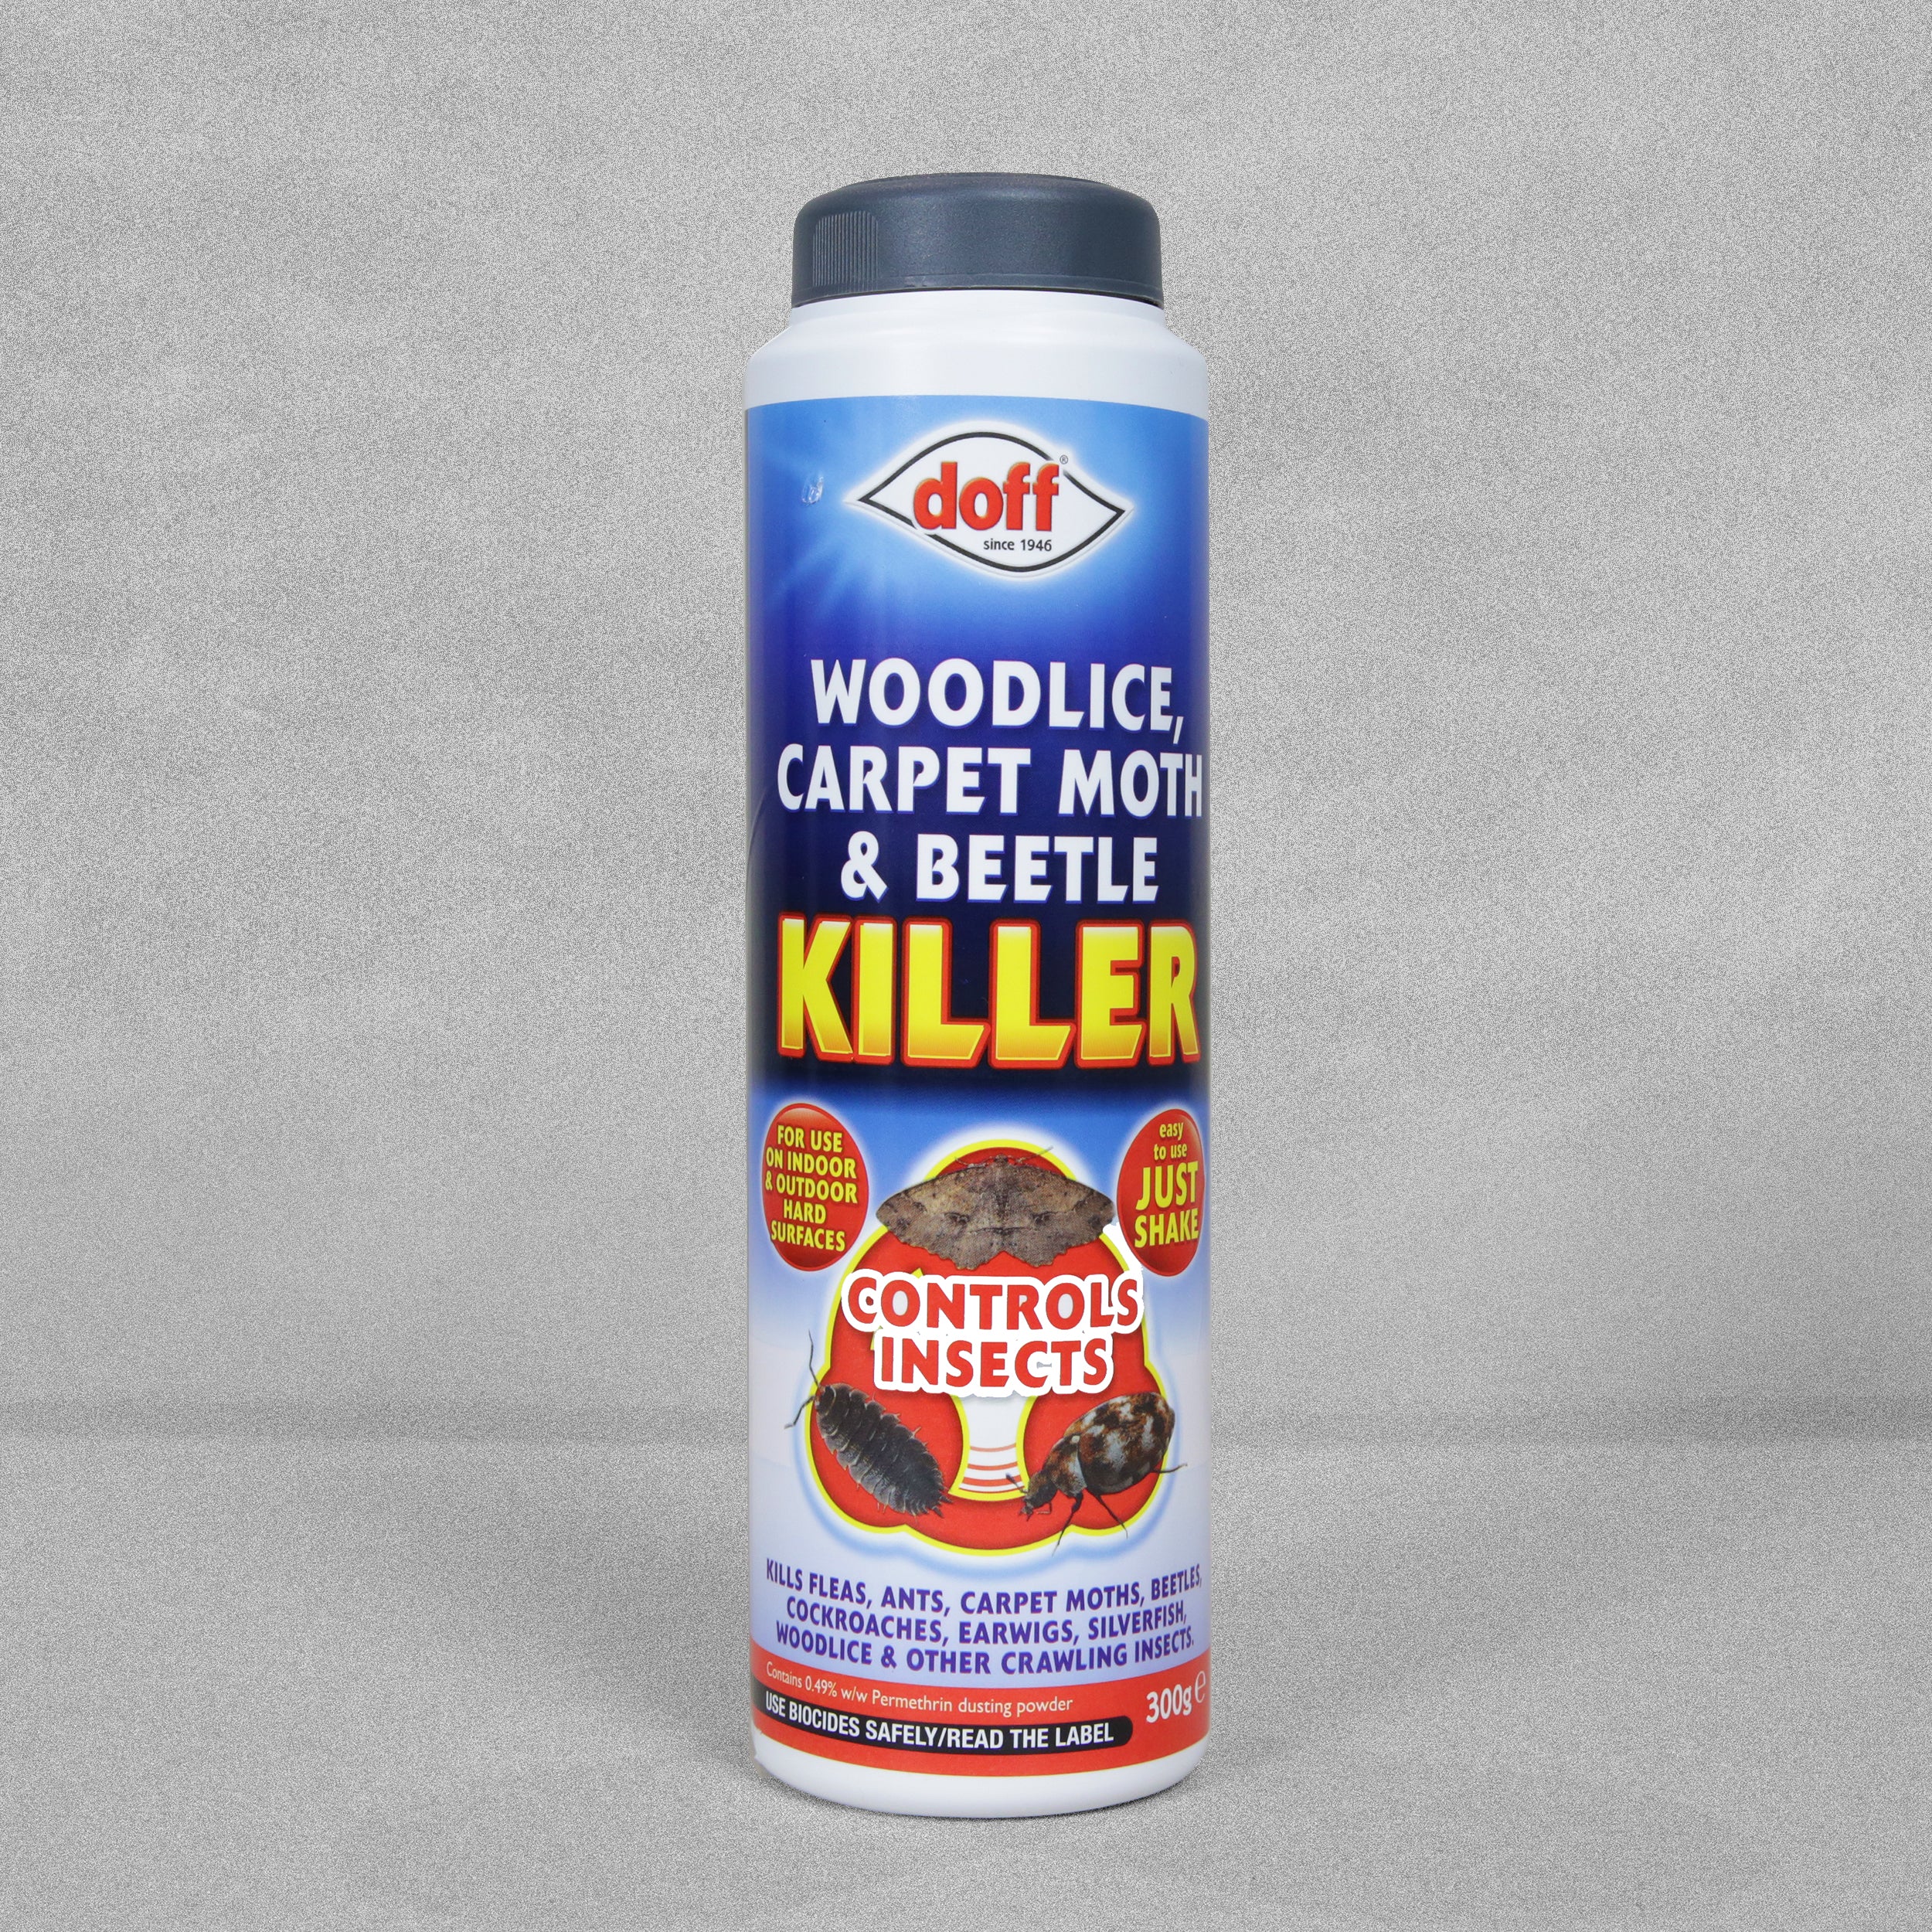 Doff Woodlice, Carpet Moth & Beetle Killer - 300g